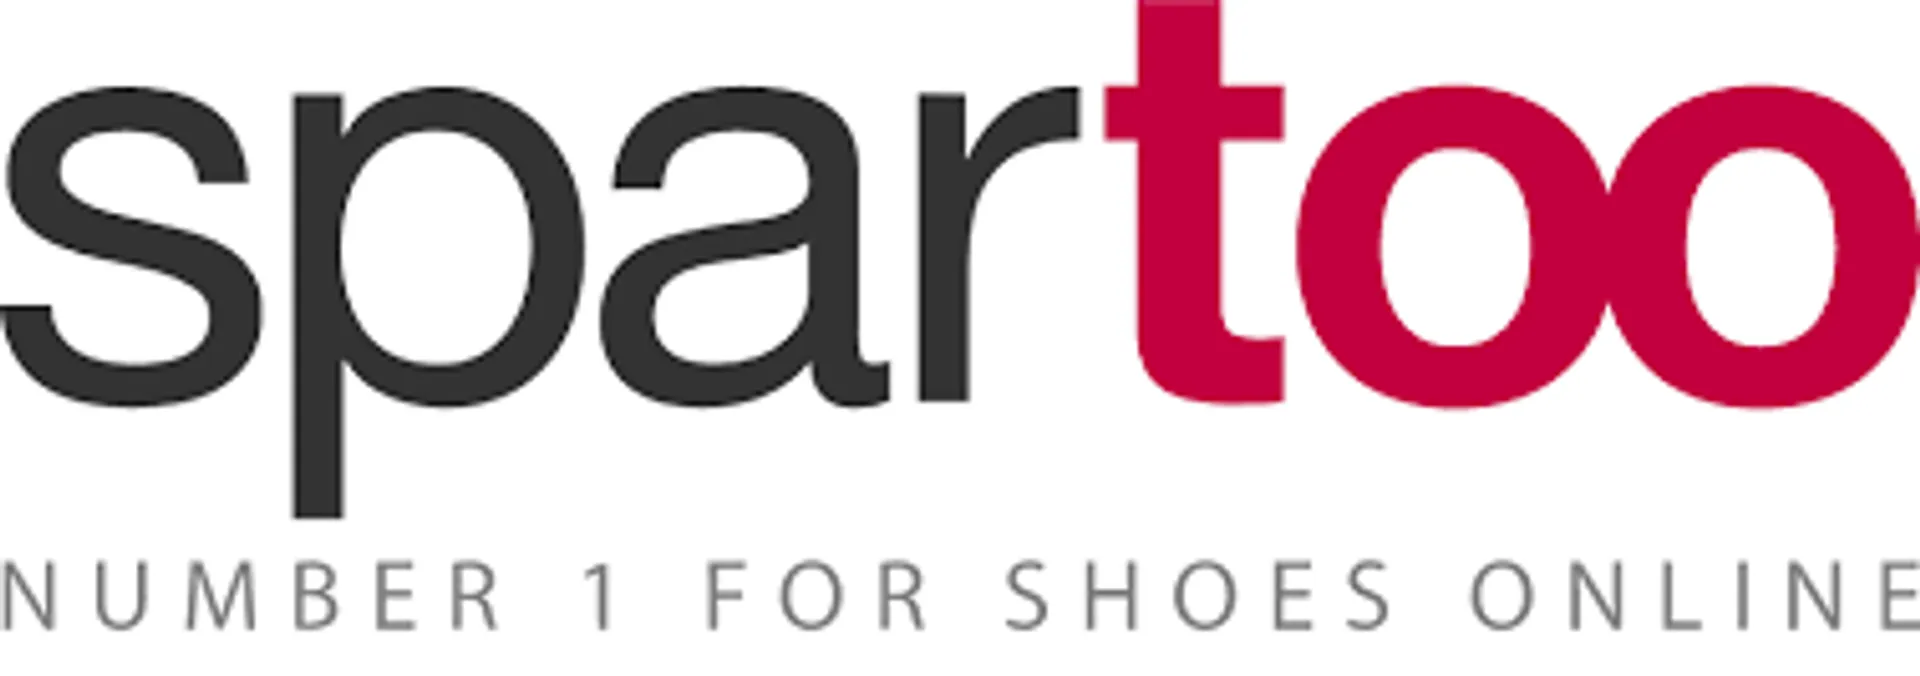 SPARTOO logo. Current catalogue